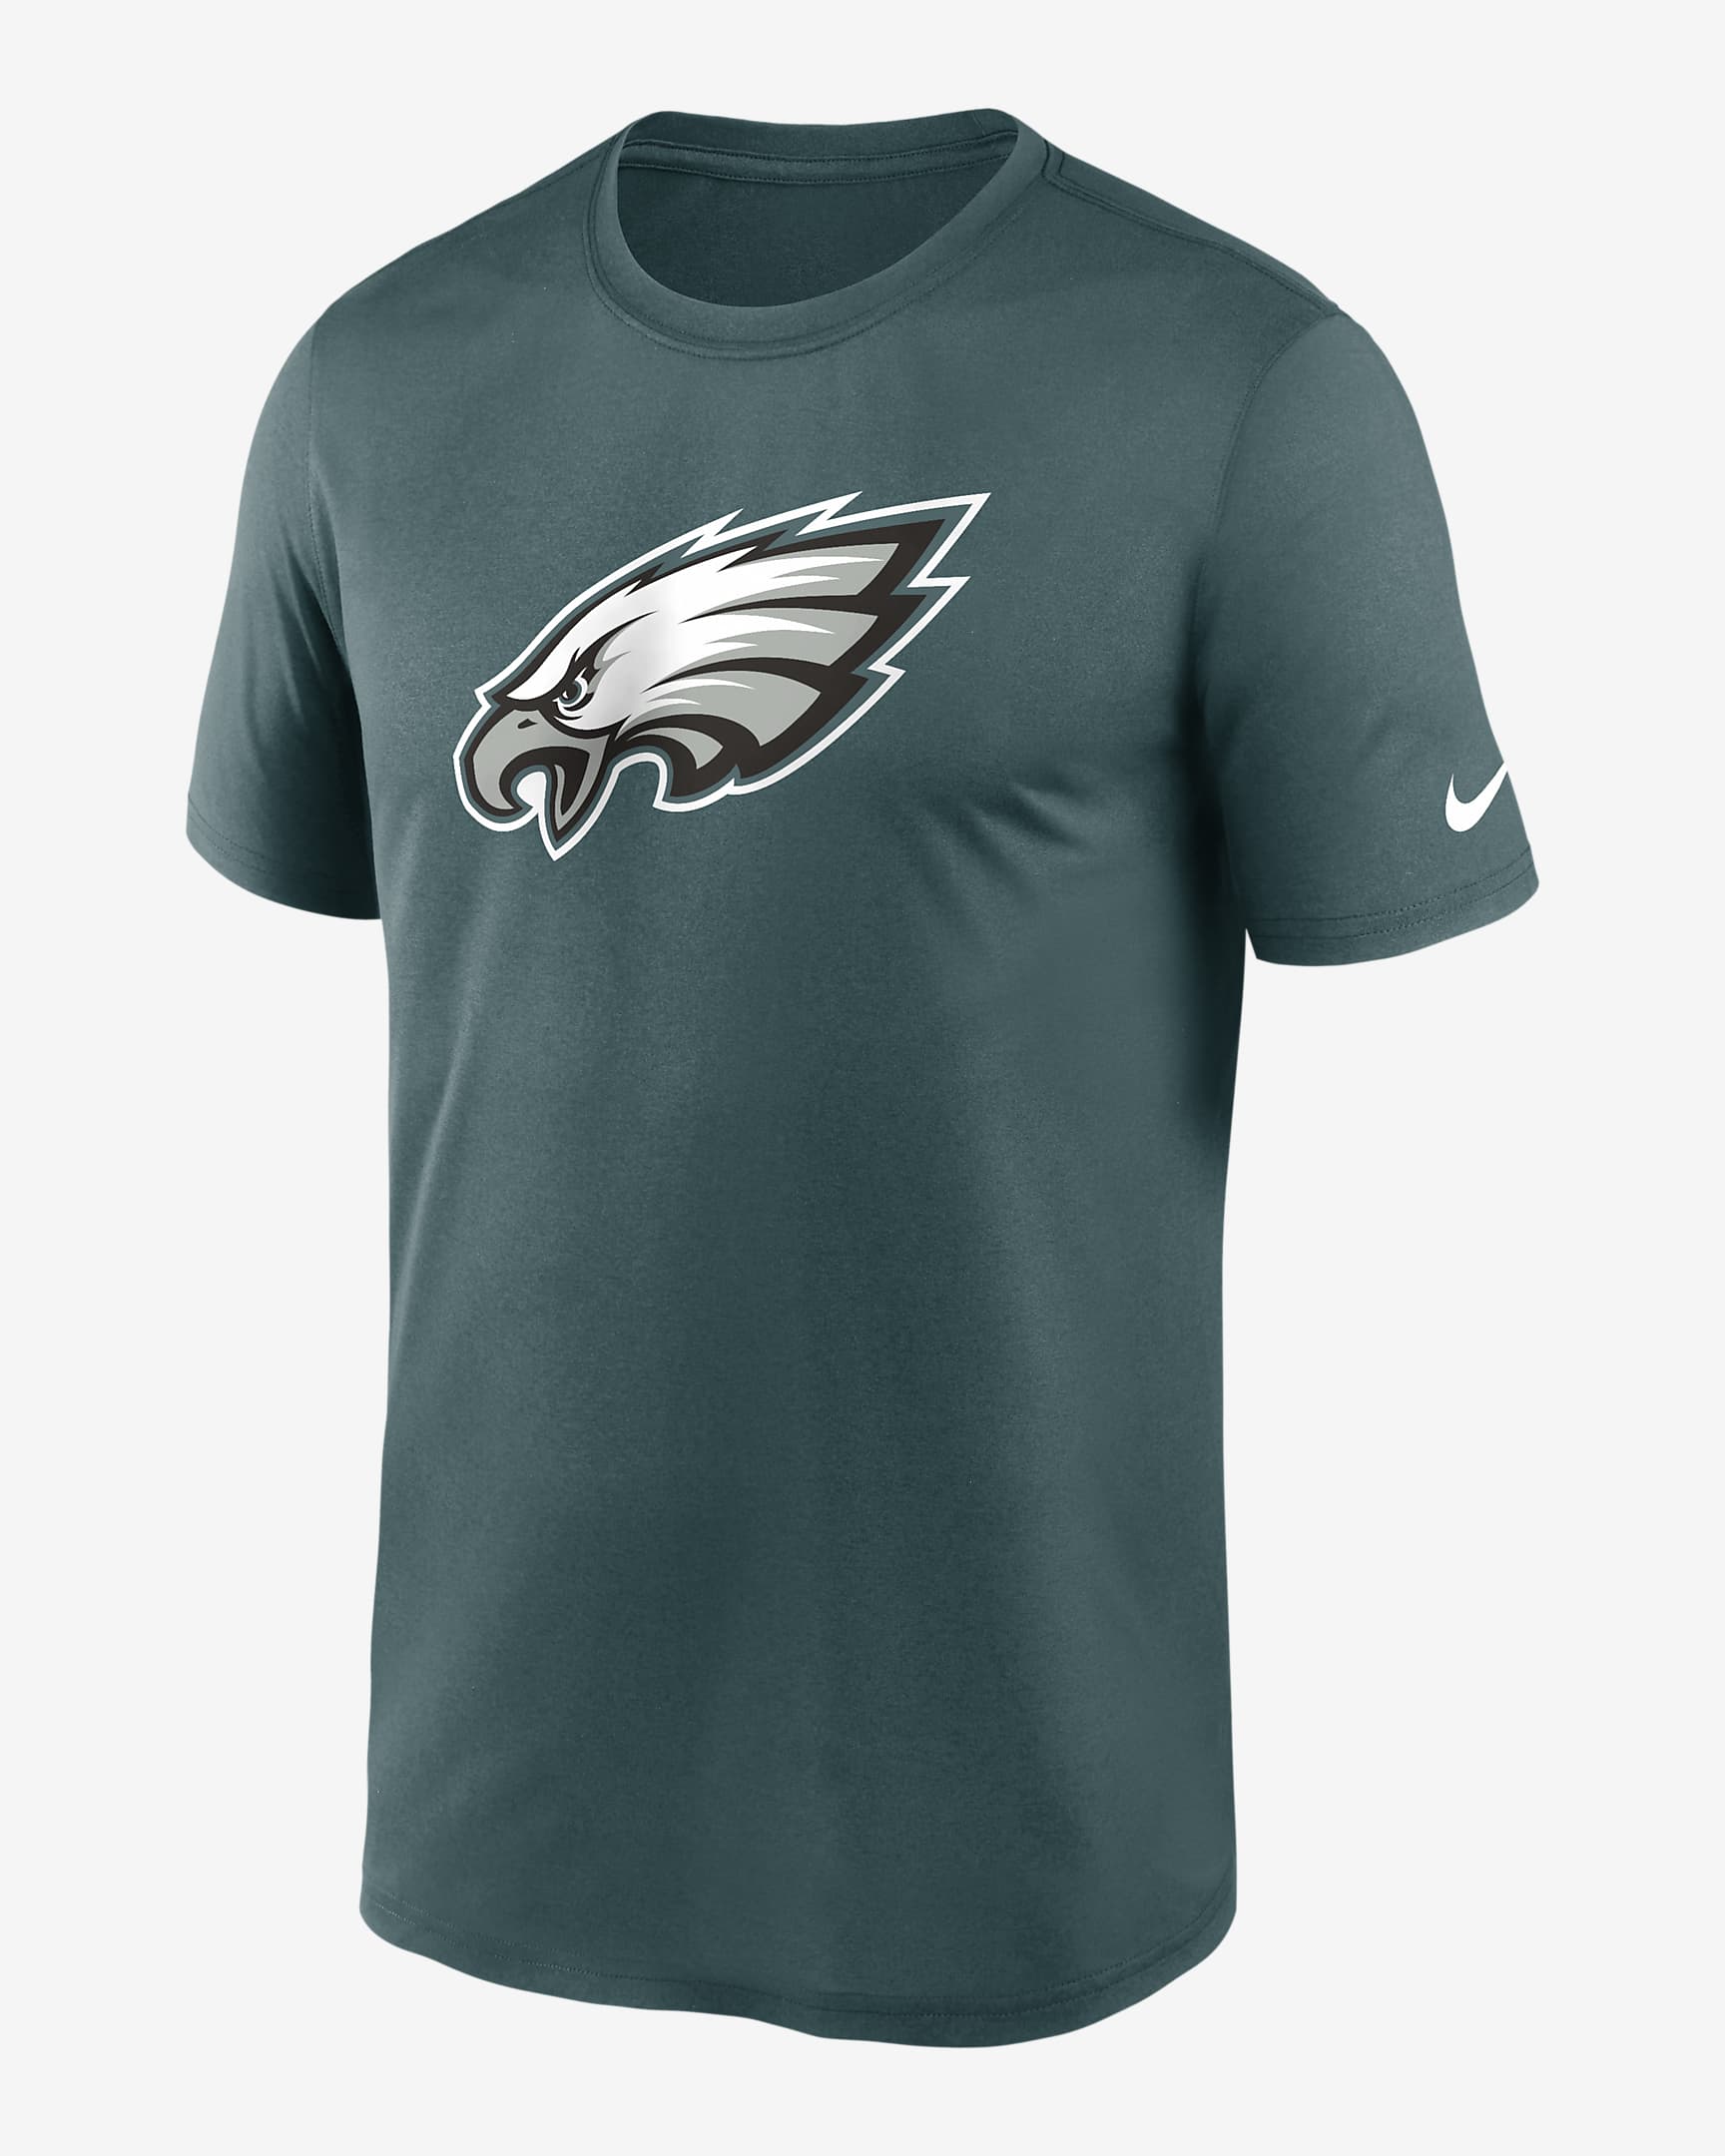 Nike Dri Fit Logo Legend Nfl Philadelphia Eagles Mens T Shirt